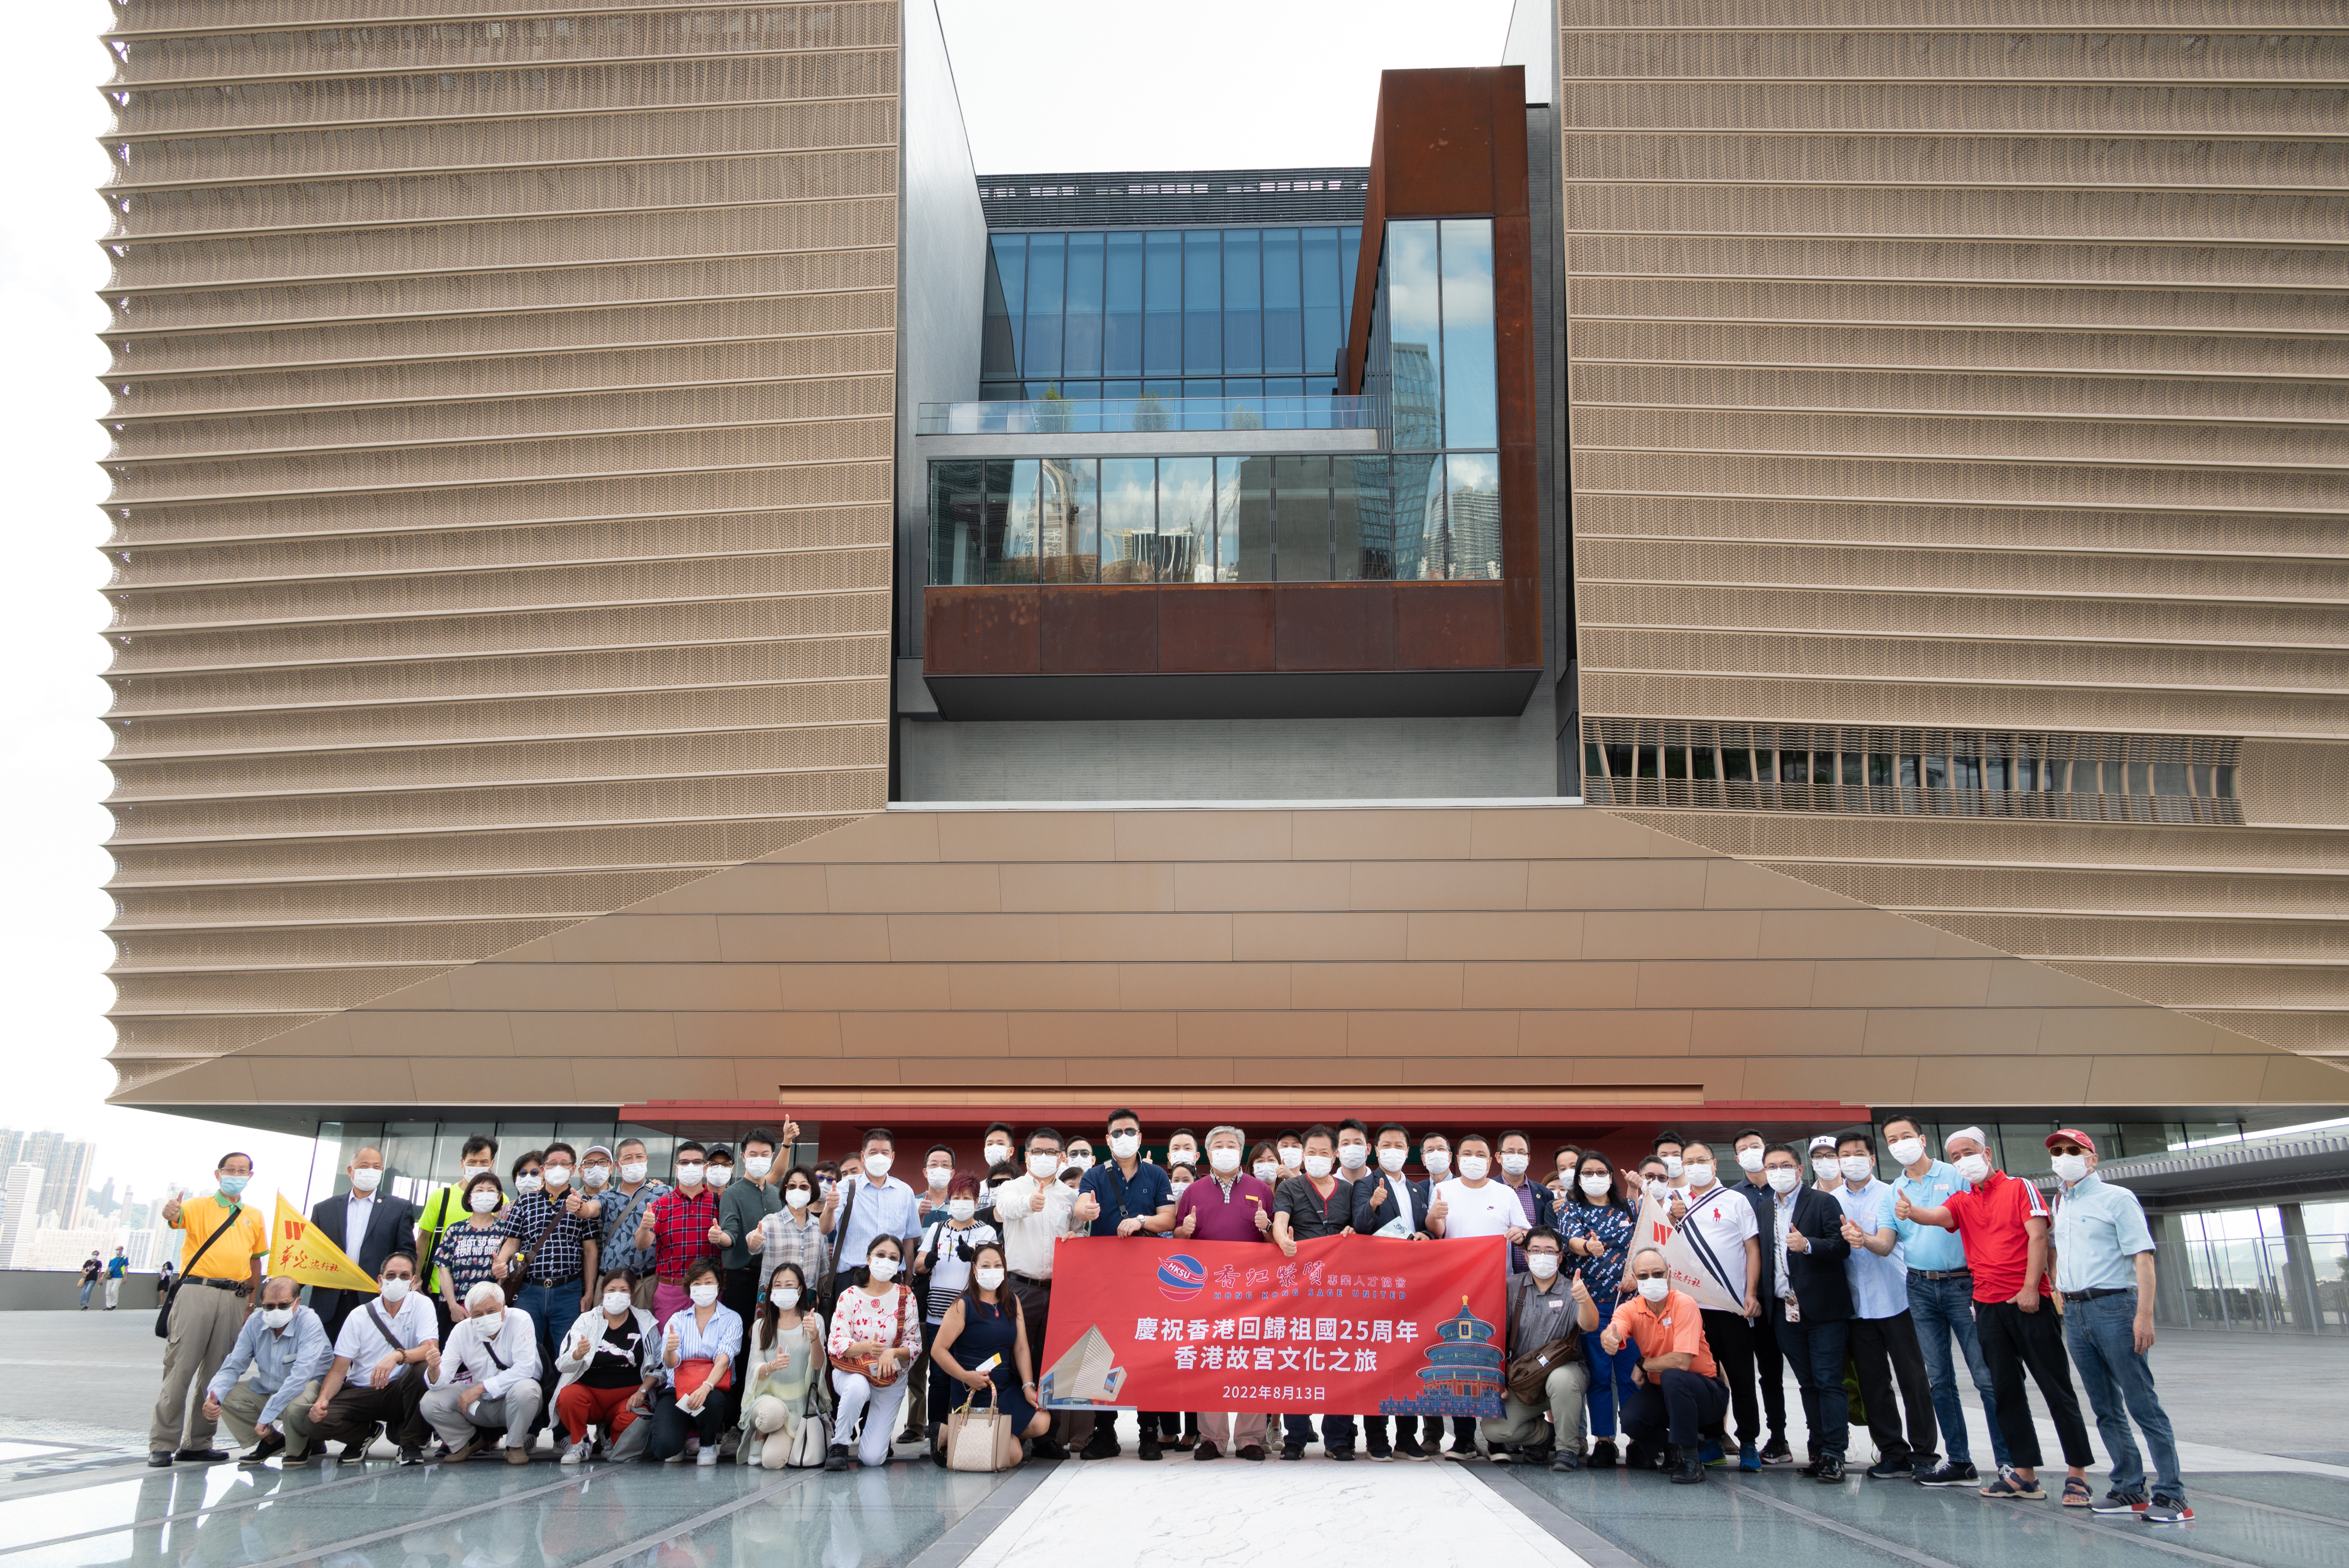 香江聚賢慶祝香港回歸祖國25周年香港故宮文化之旅